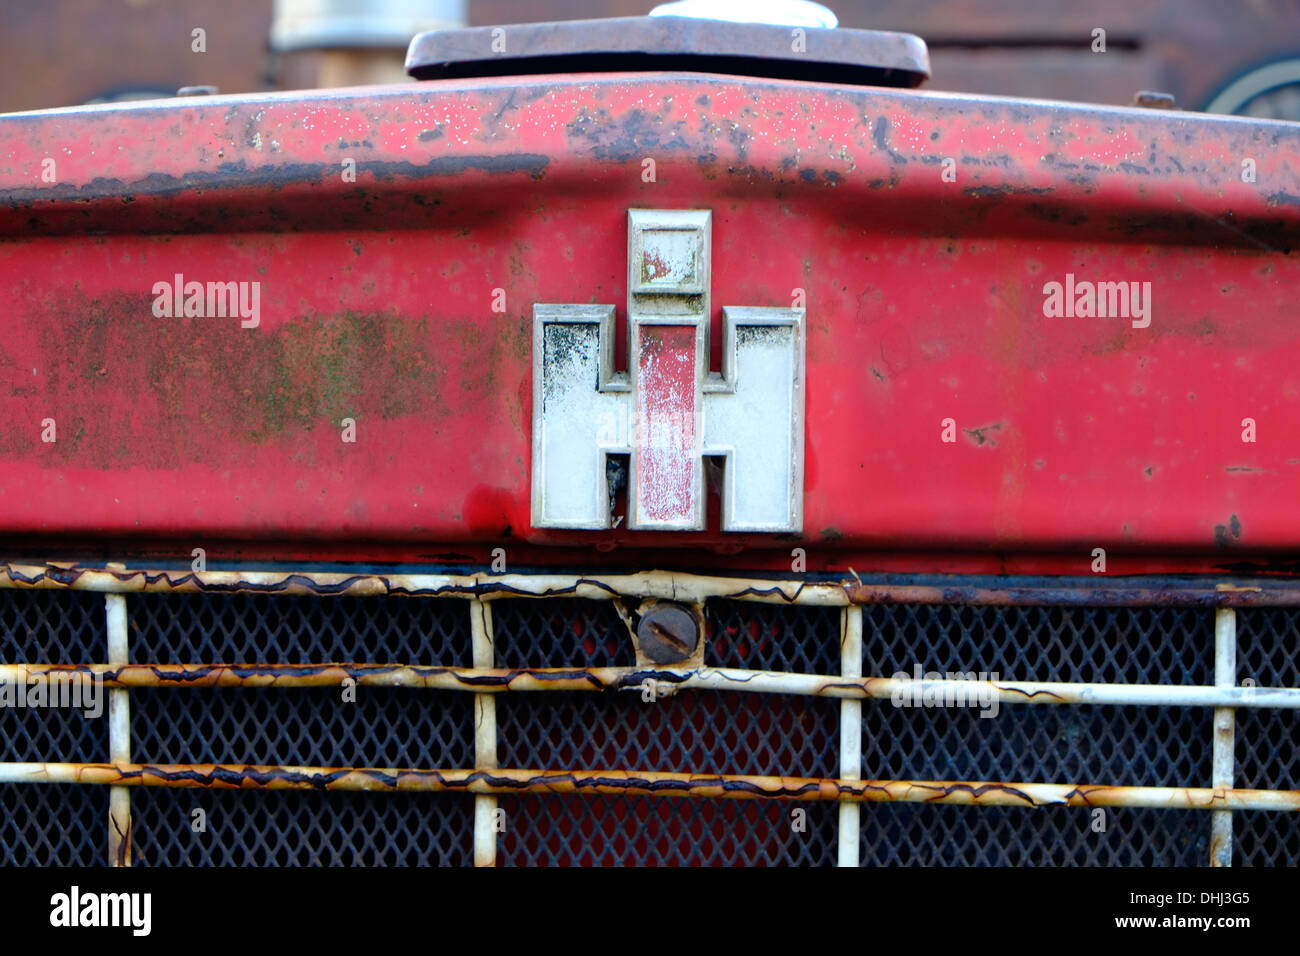 Primo piano di una parte di un trattore International Harvester arrugginito rosso pronto per il ripristino. Devon, Regno Unito Foto Stock